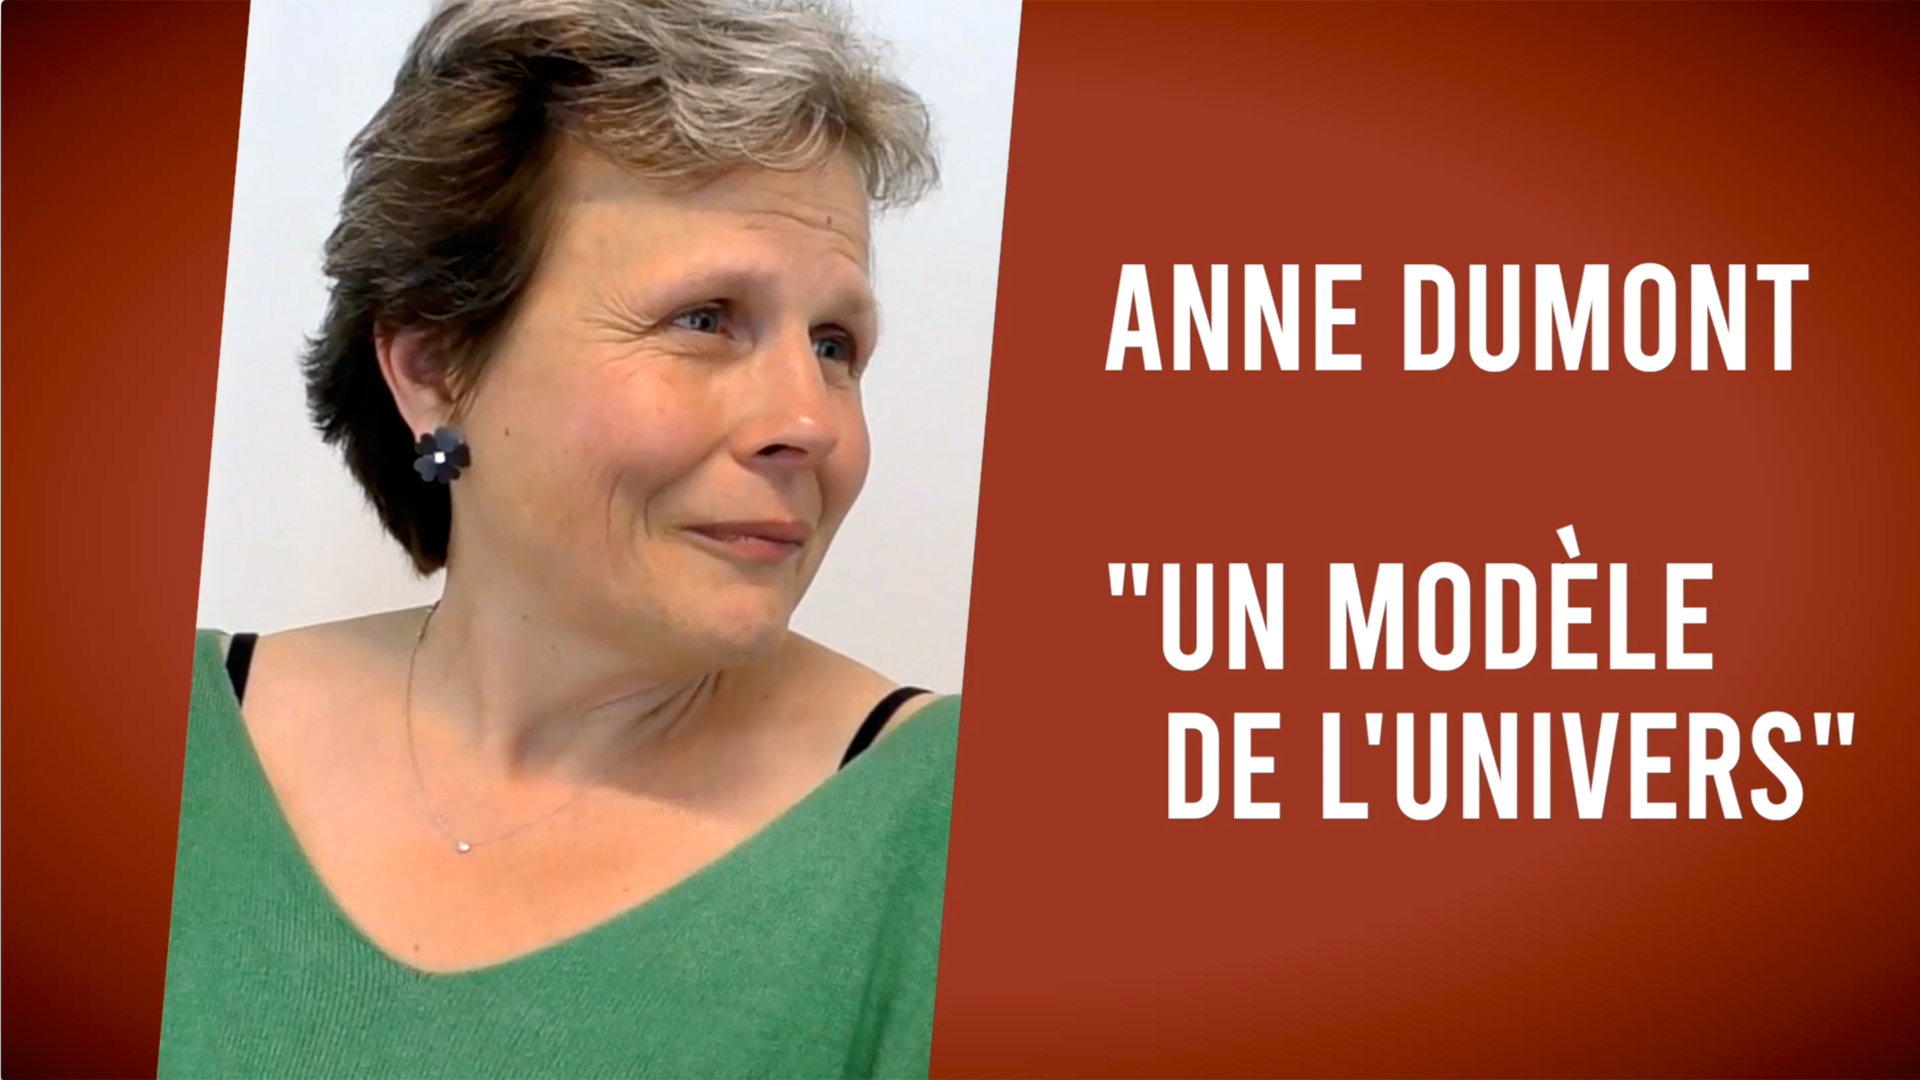 Anne Dumont “Un modèle de l'univers“